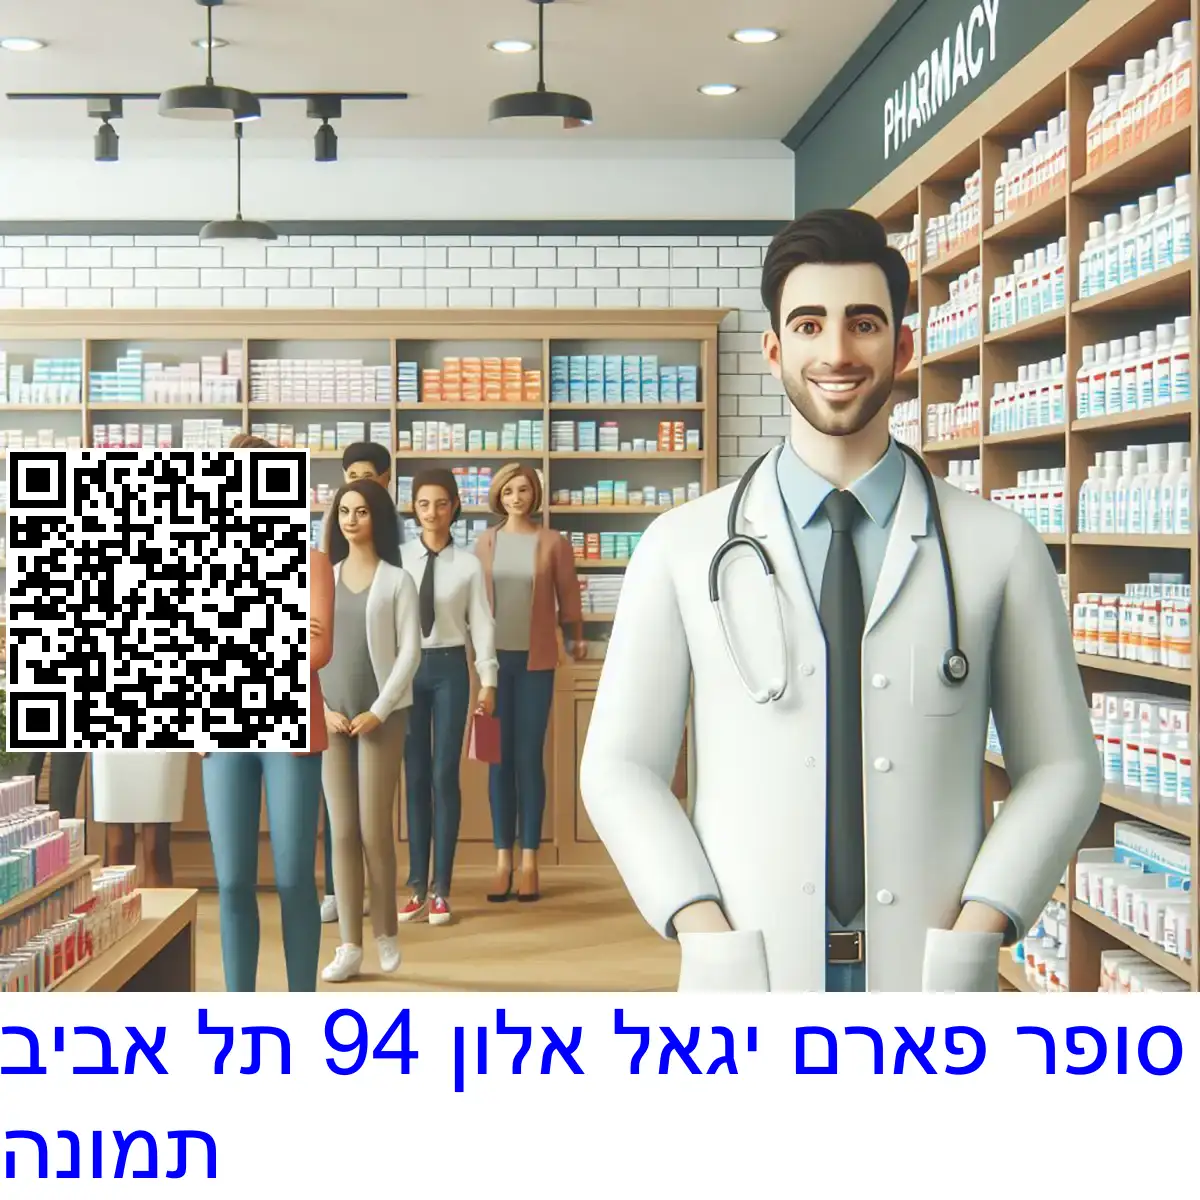 סופר פארם יגאל אלון 94 תל אביב